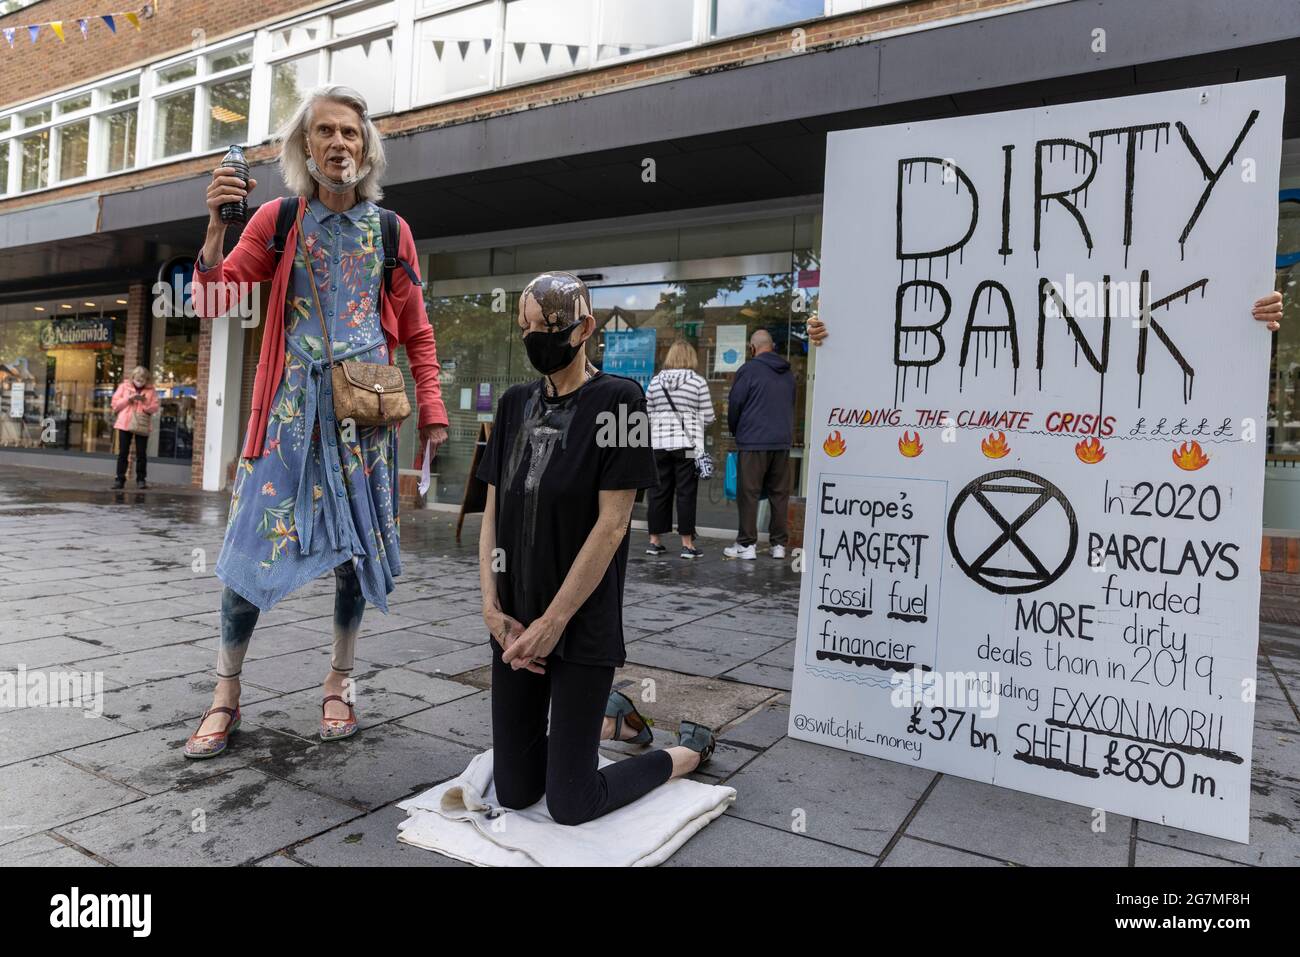 Manifestanti climatici al di fuori di una Barclays Bank che manifestano contro gli investimenti finanziari delle banche in combustibili fossili, St Albans, Hertfordshire, Inghilterra, Regno Unito Foto Stock